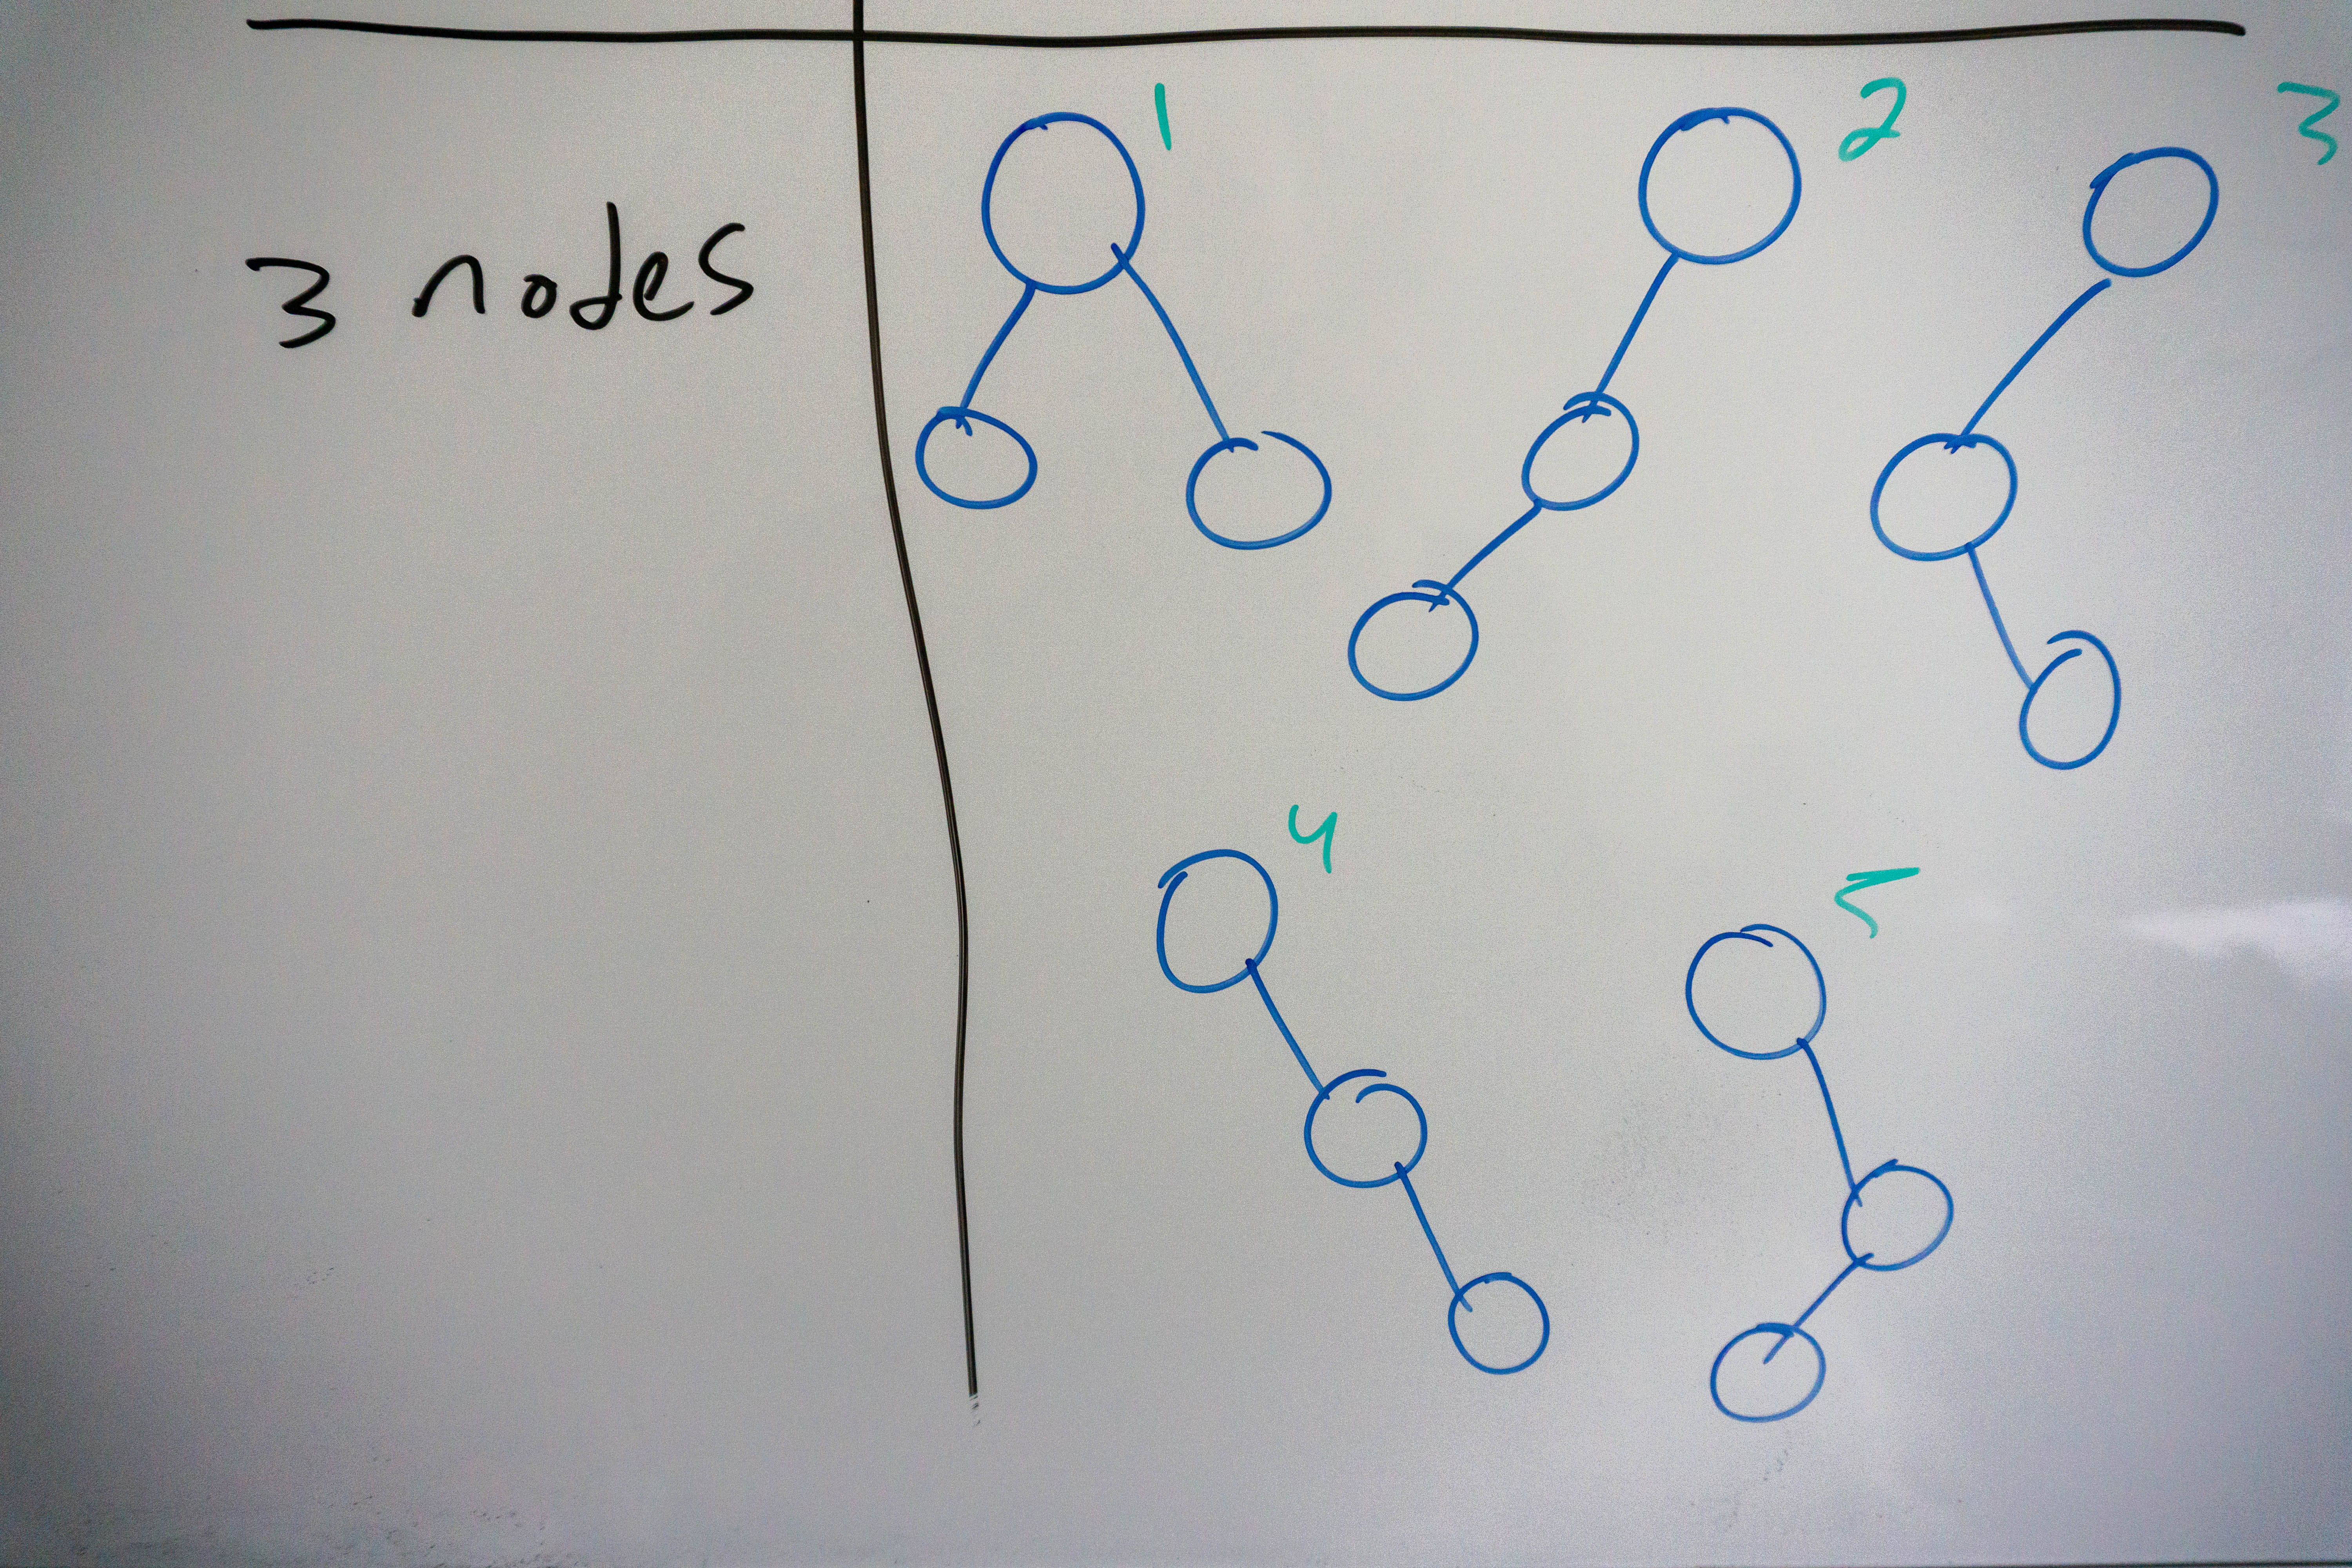 Binary Tree 3 nodes